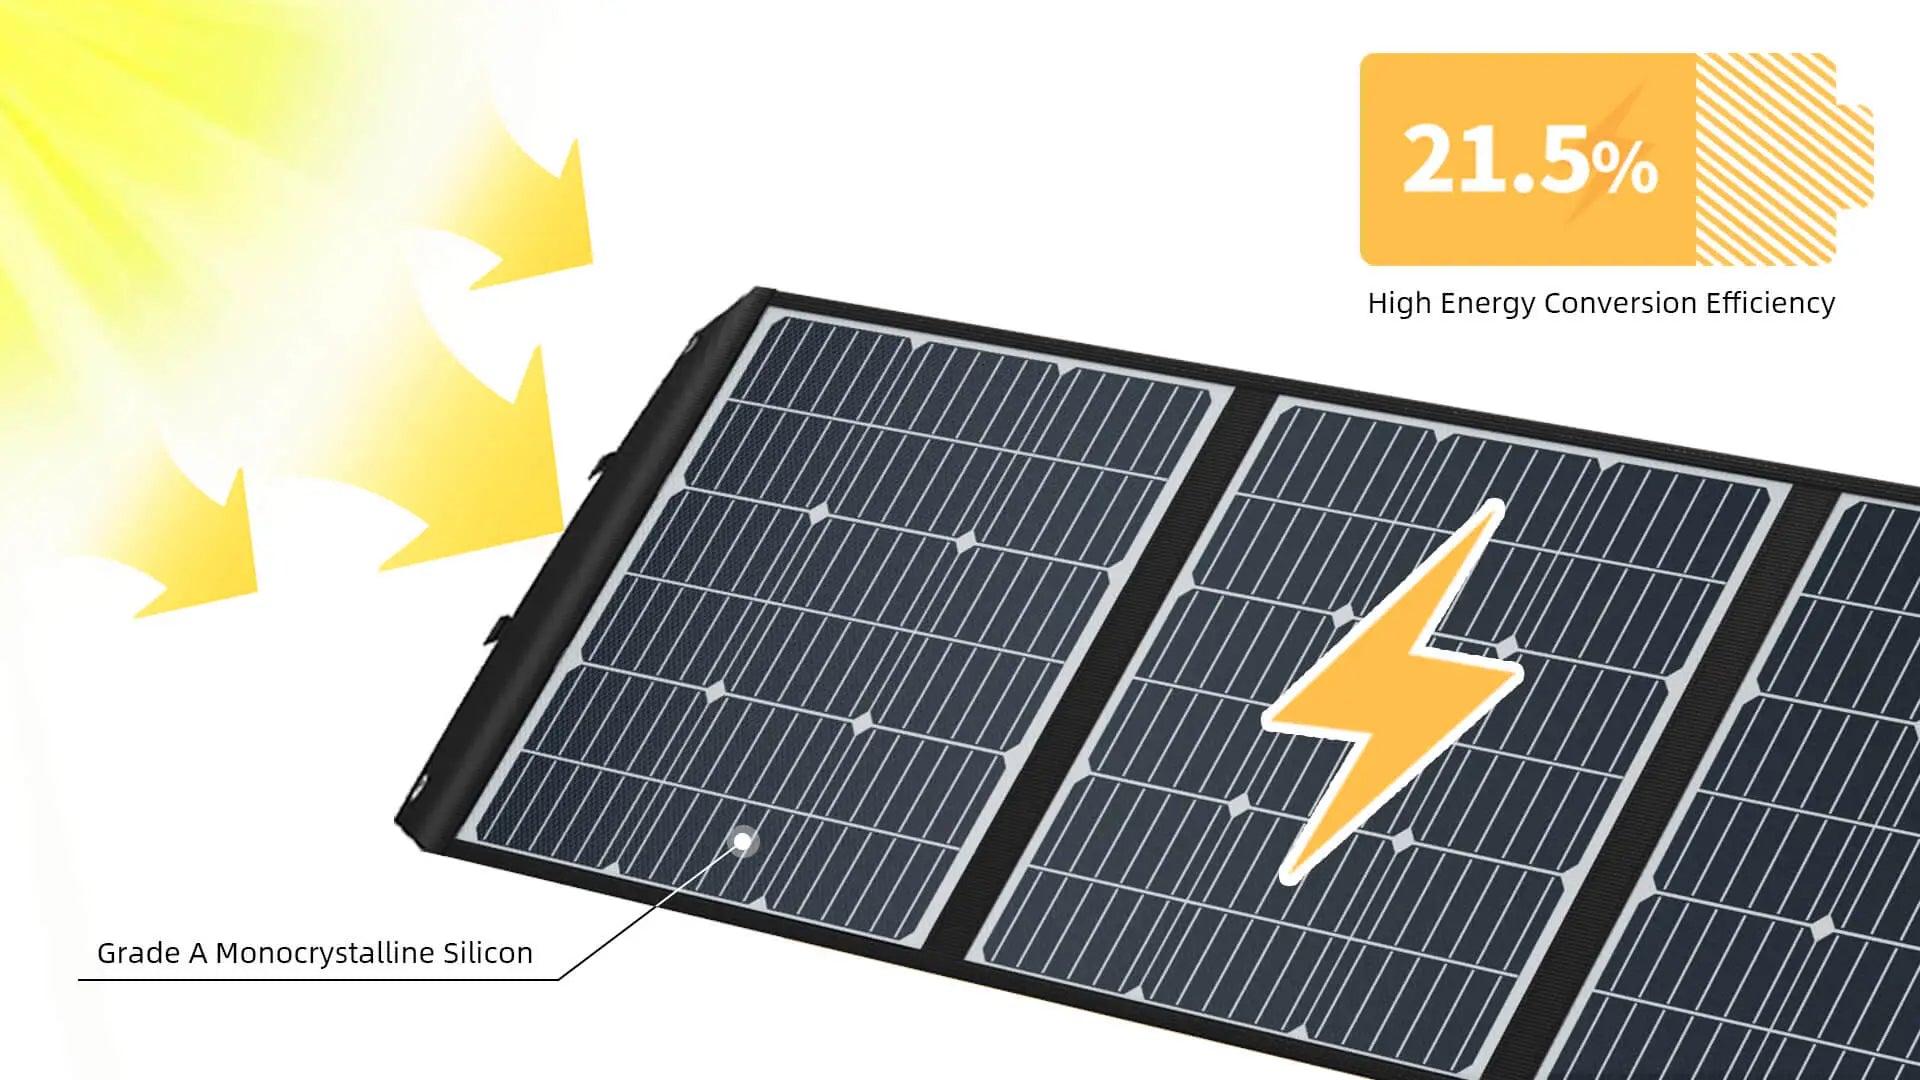 174W 12V Solar panel - All in solar energy